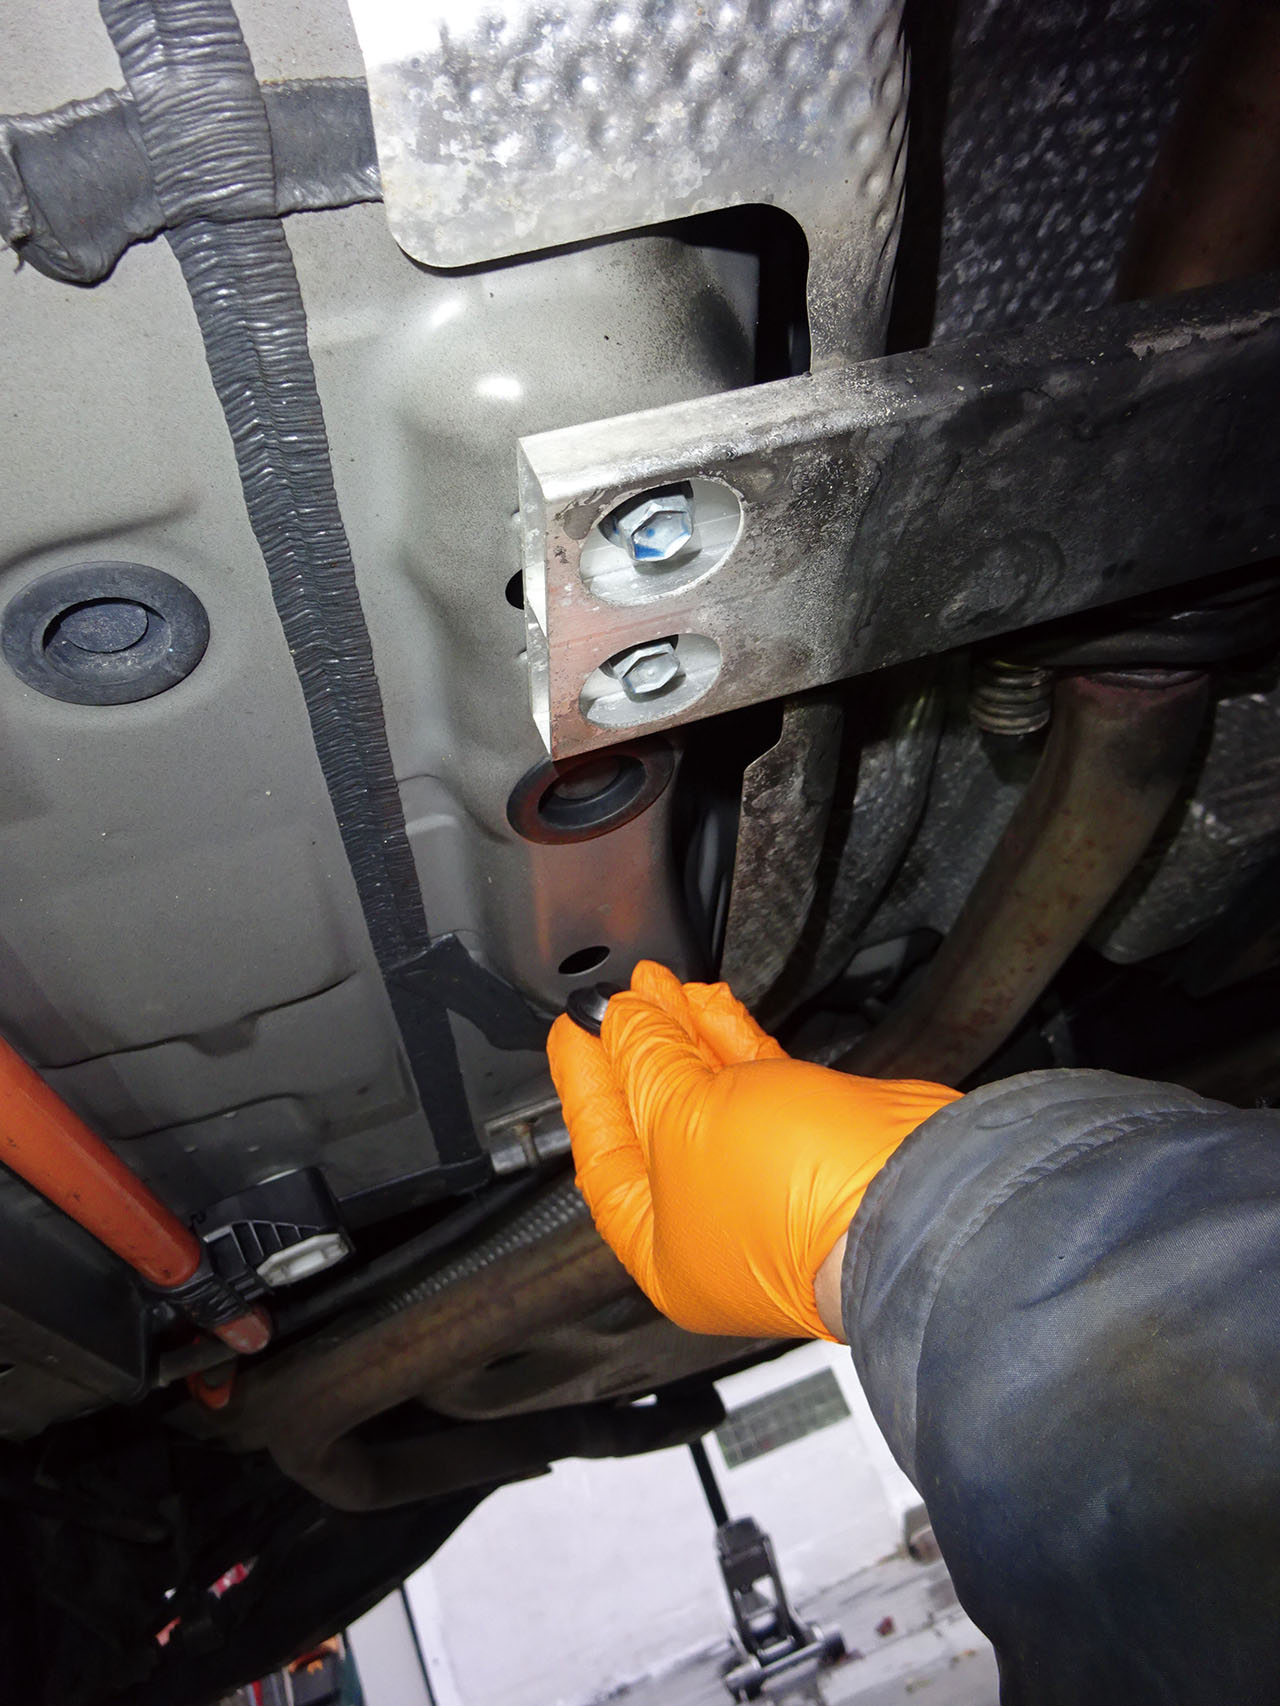 厄介なサイドシルの 錆 問題をdiyメンテで解決 4 車検や修理の情報満載グーネットピット